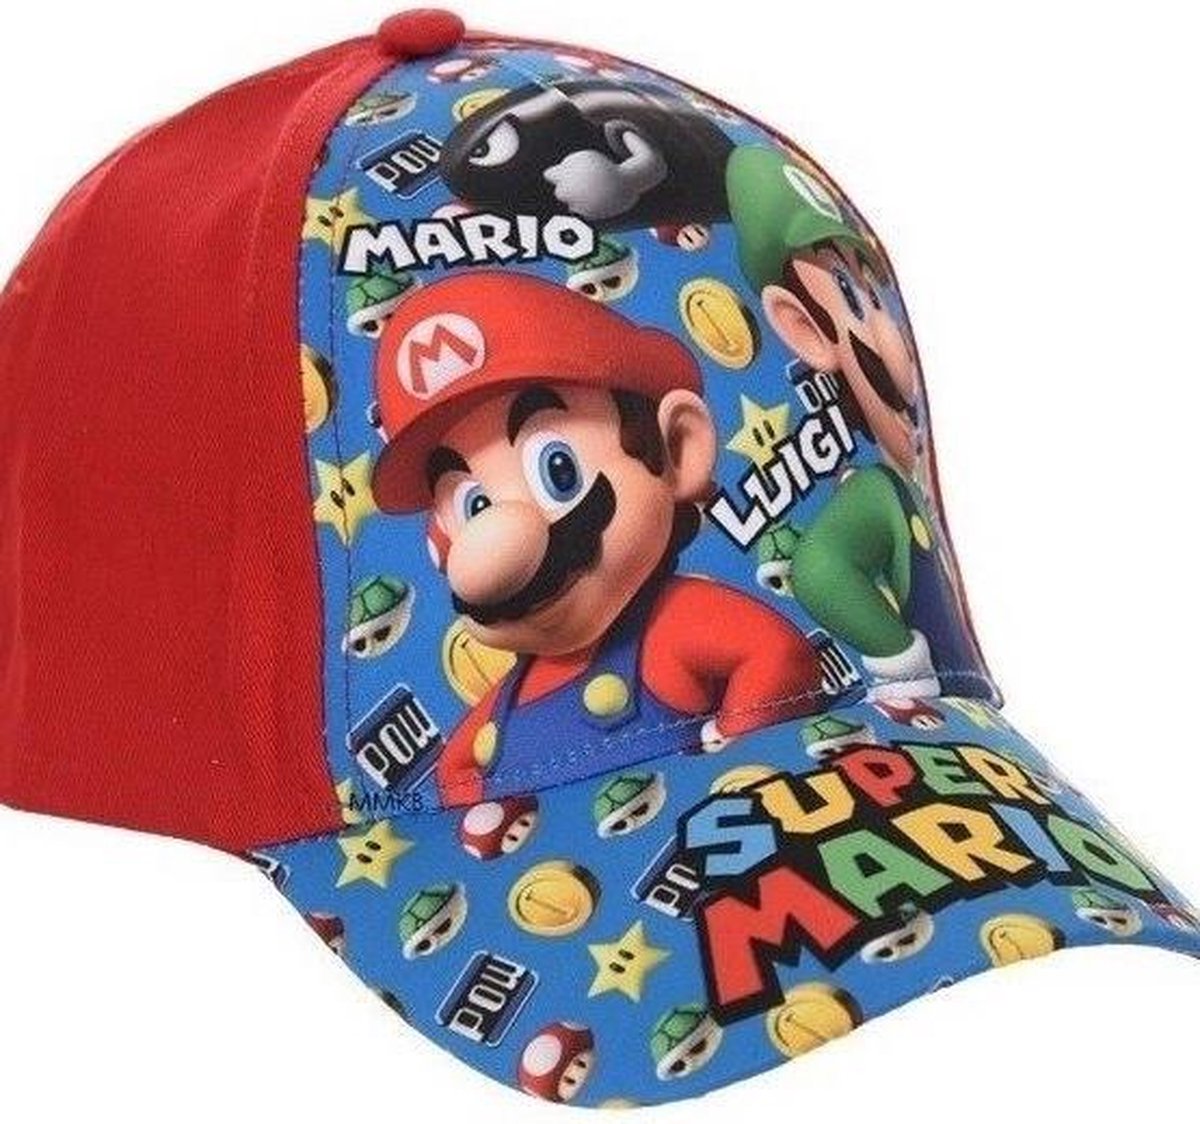 Super Mario rood bol.com